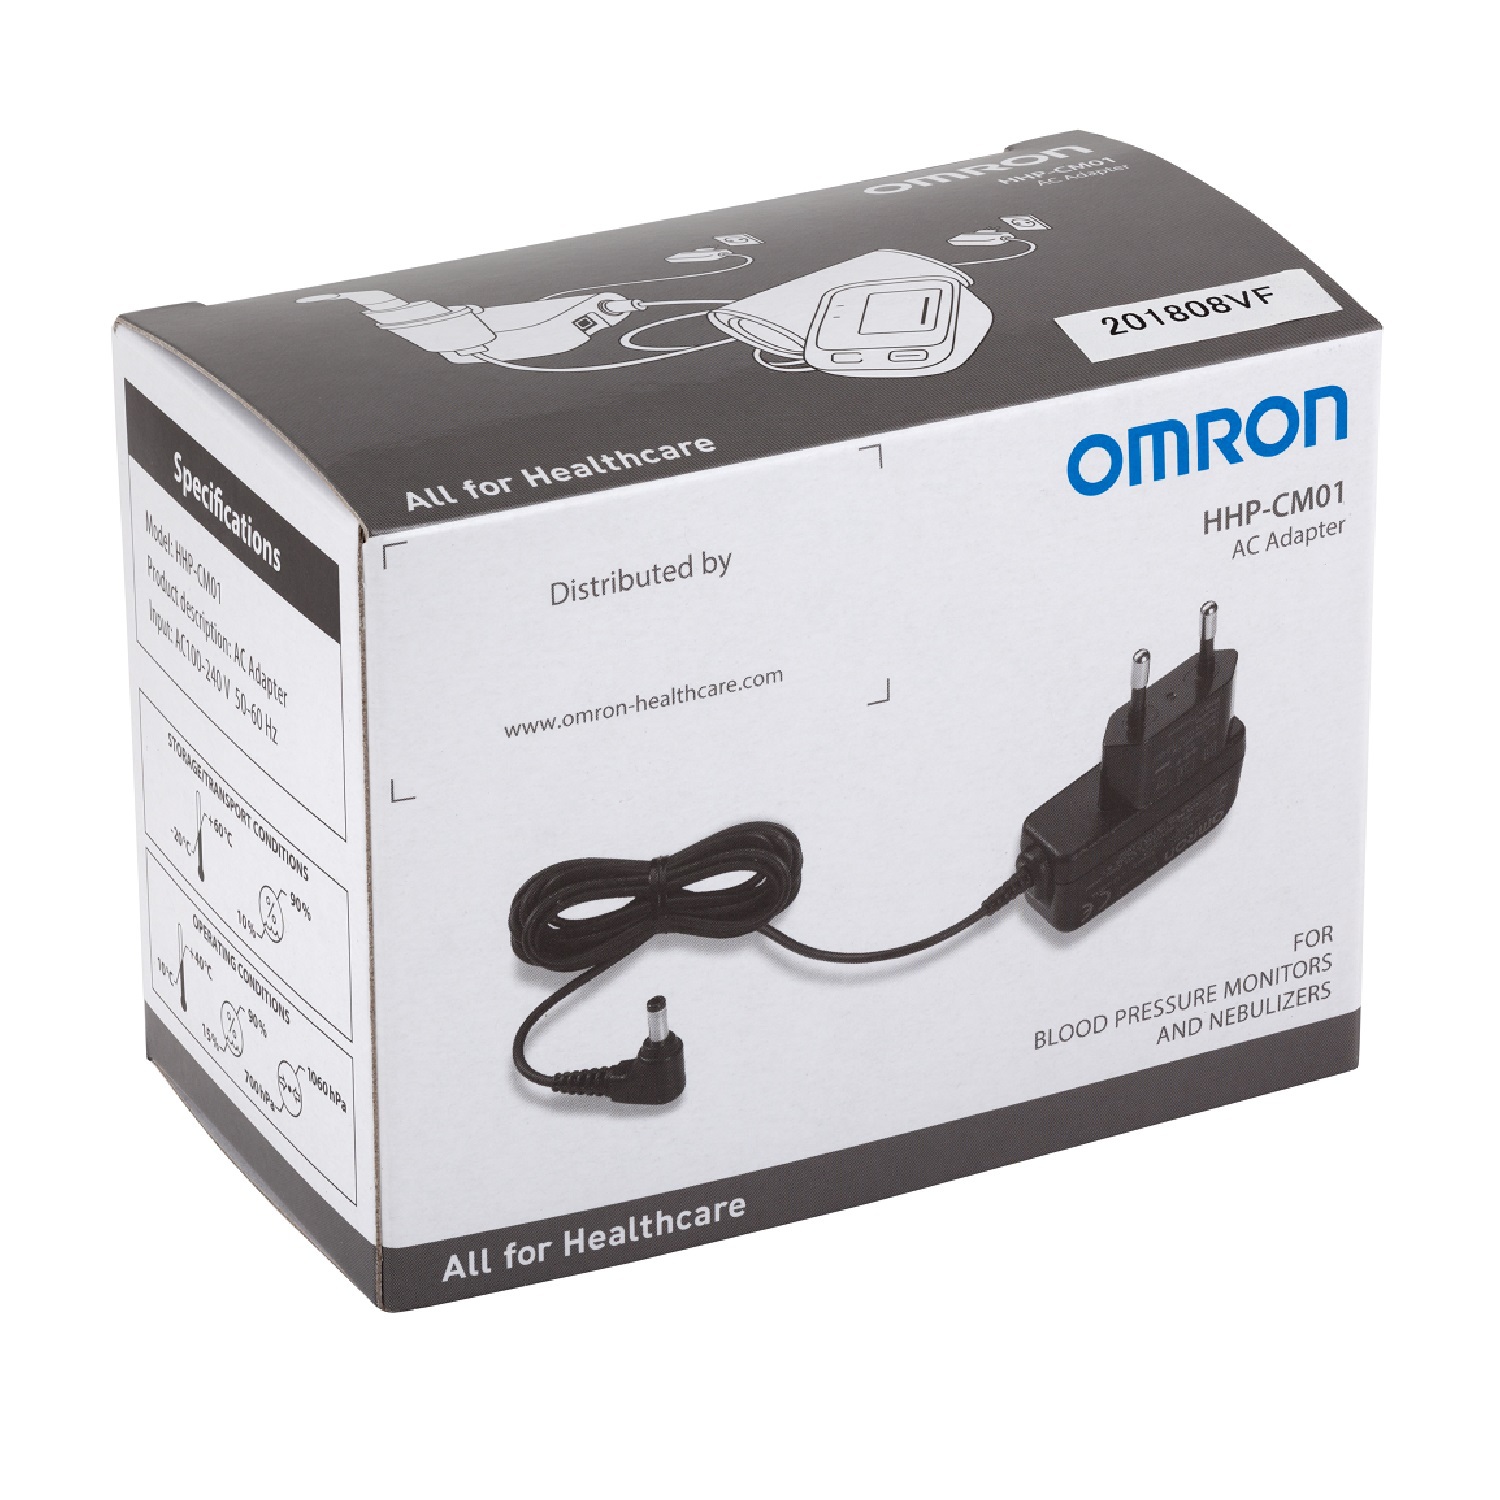 Купить Омрон адаптер HHP-CM01, Omron